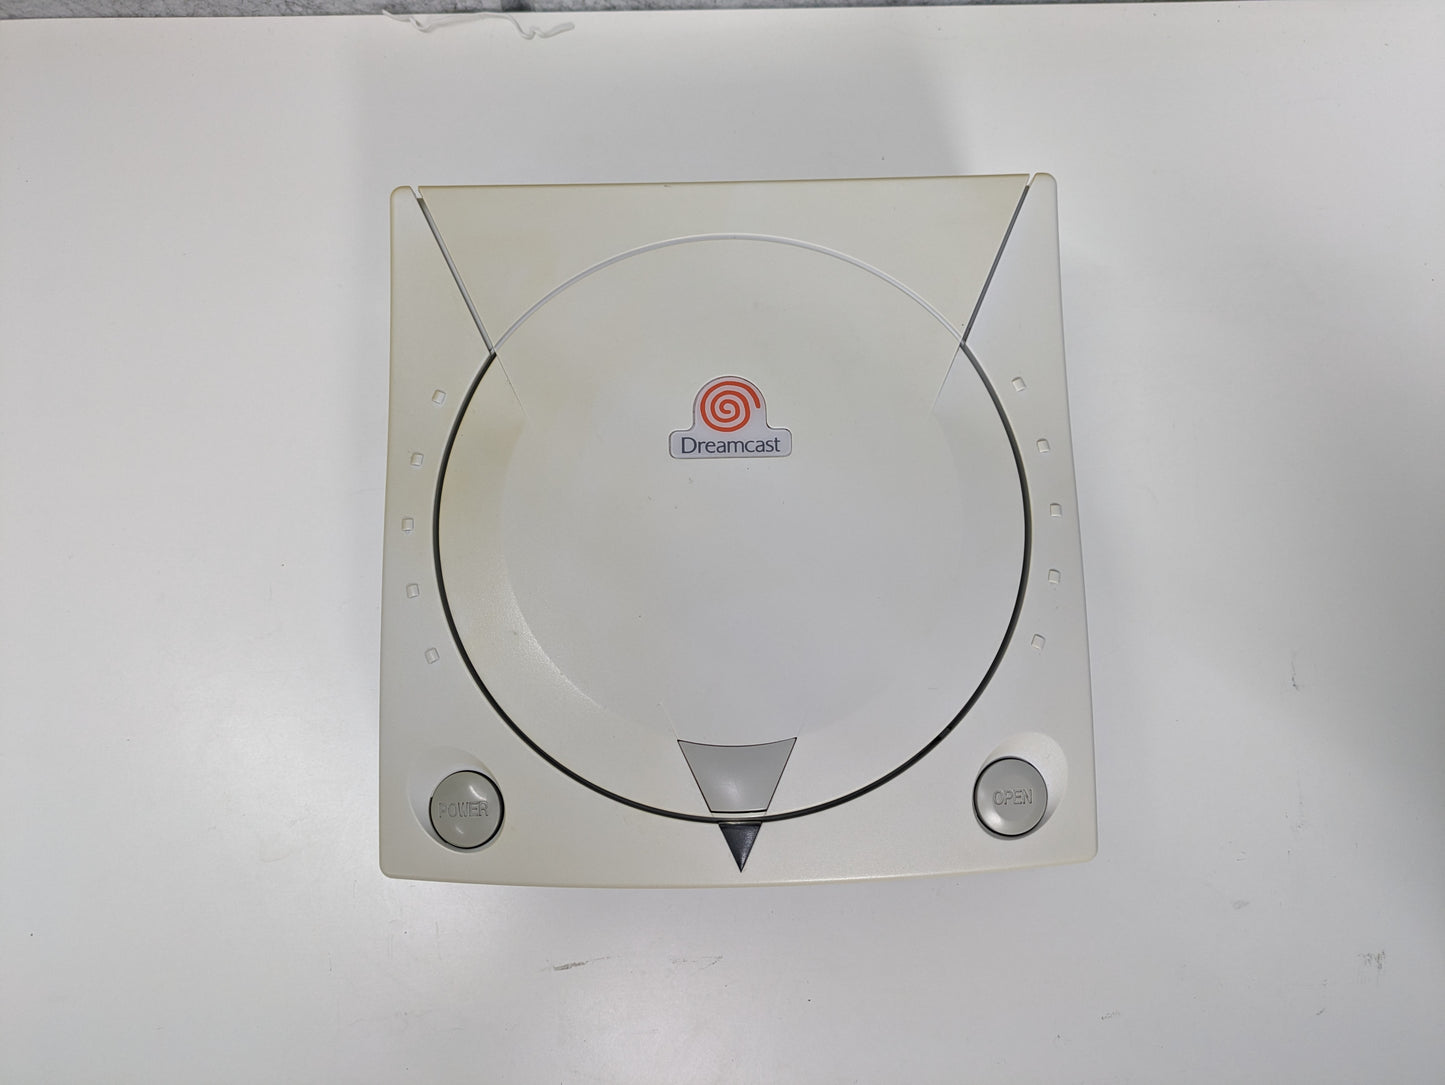 Sega Dreamcast Console w/ Controller & Cords - USED